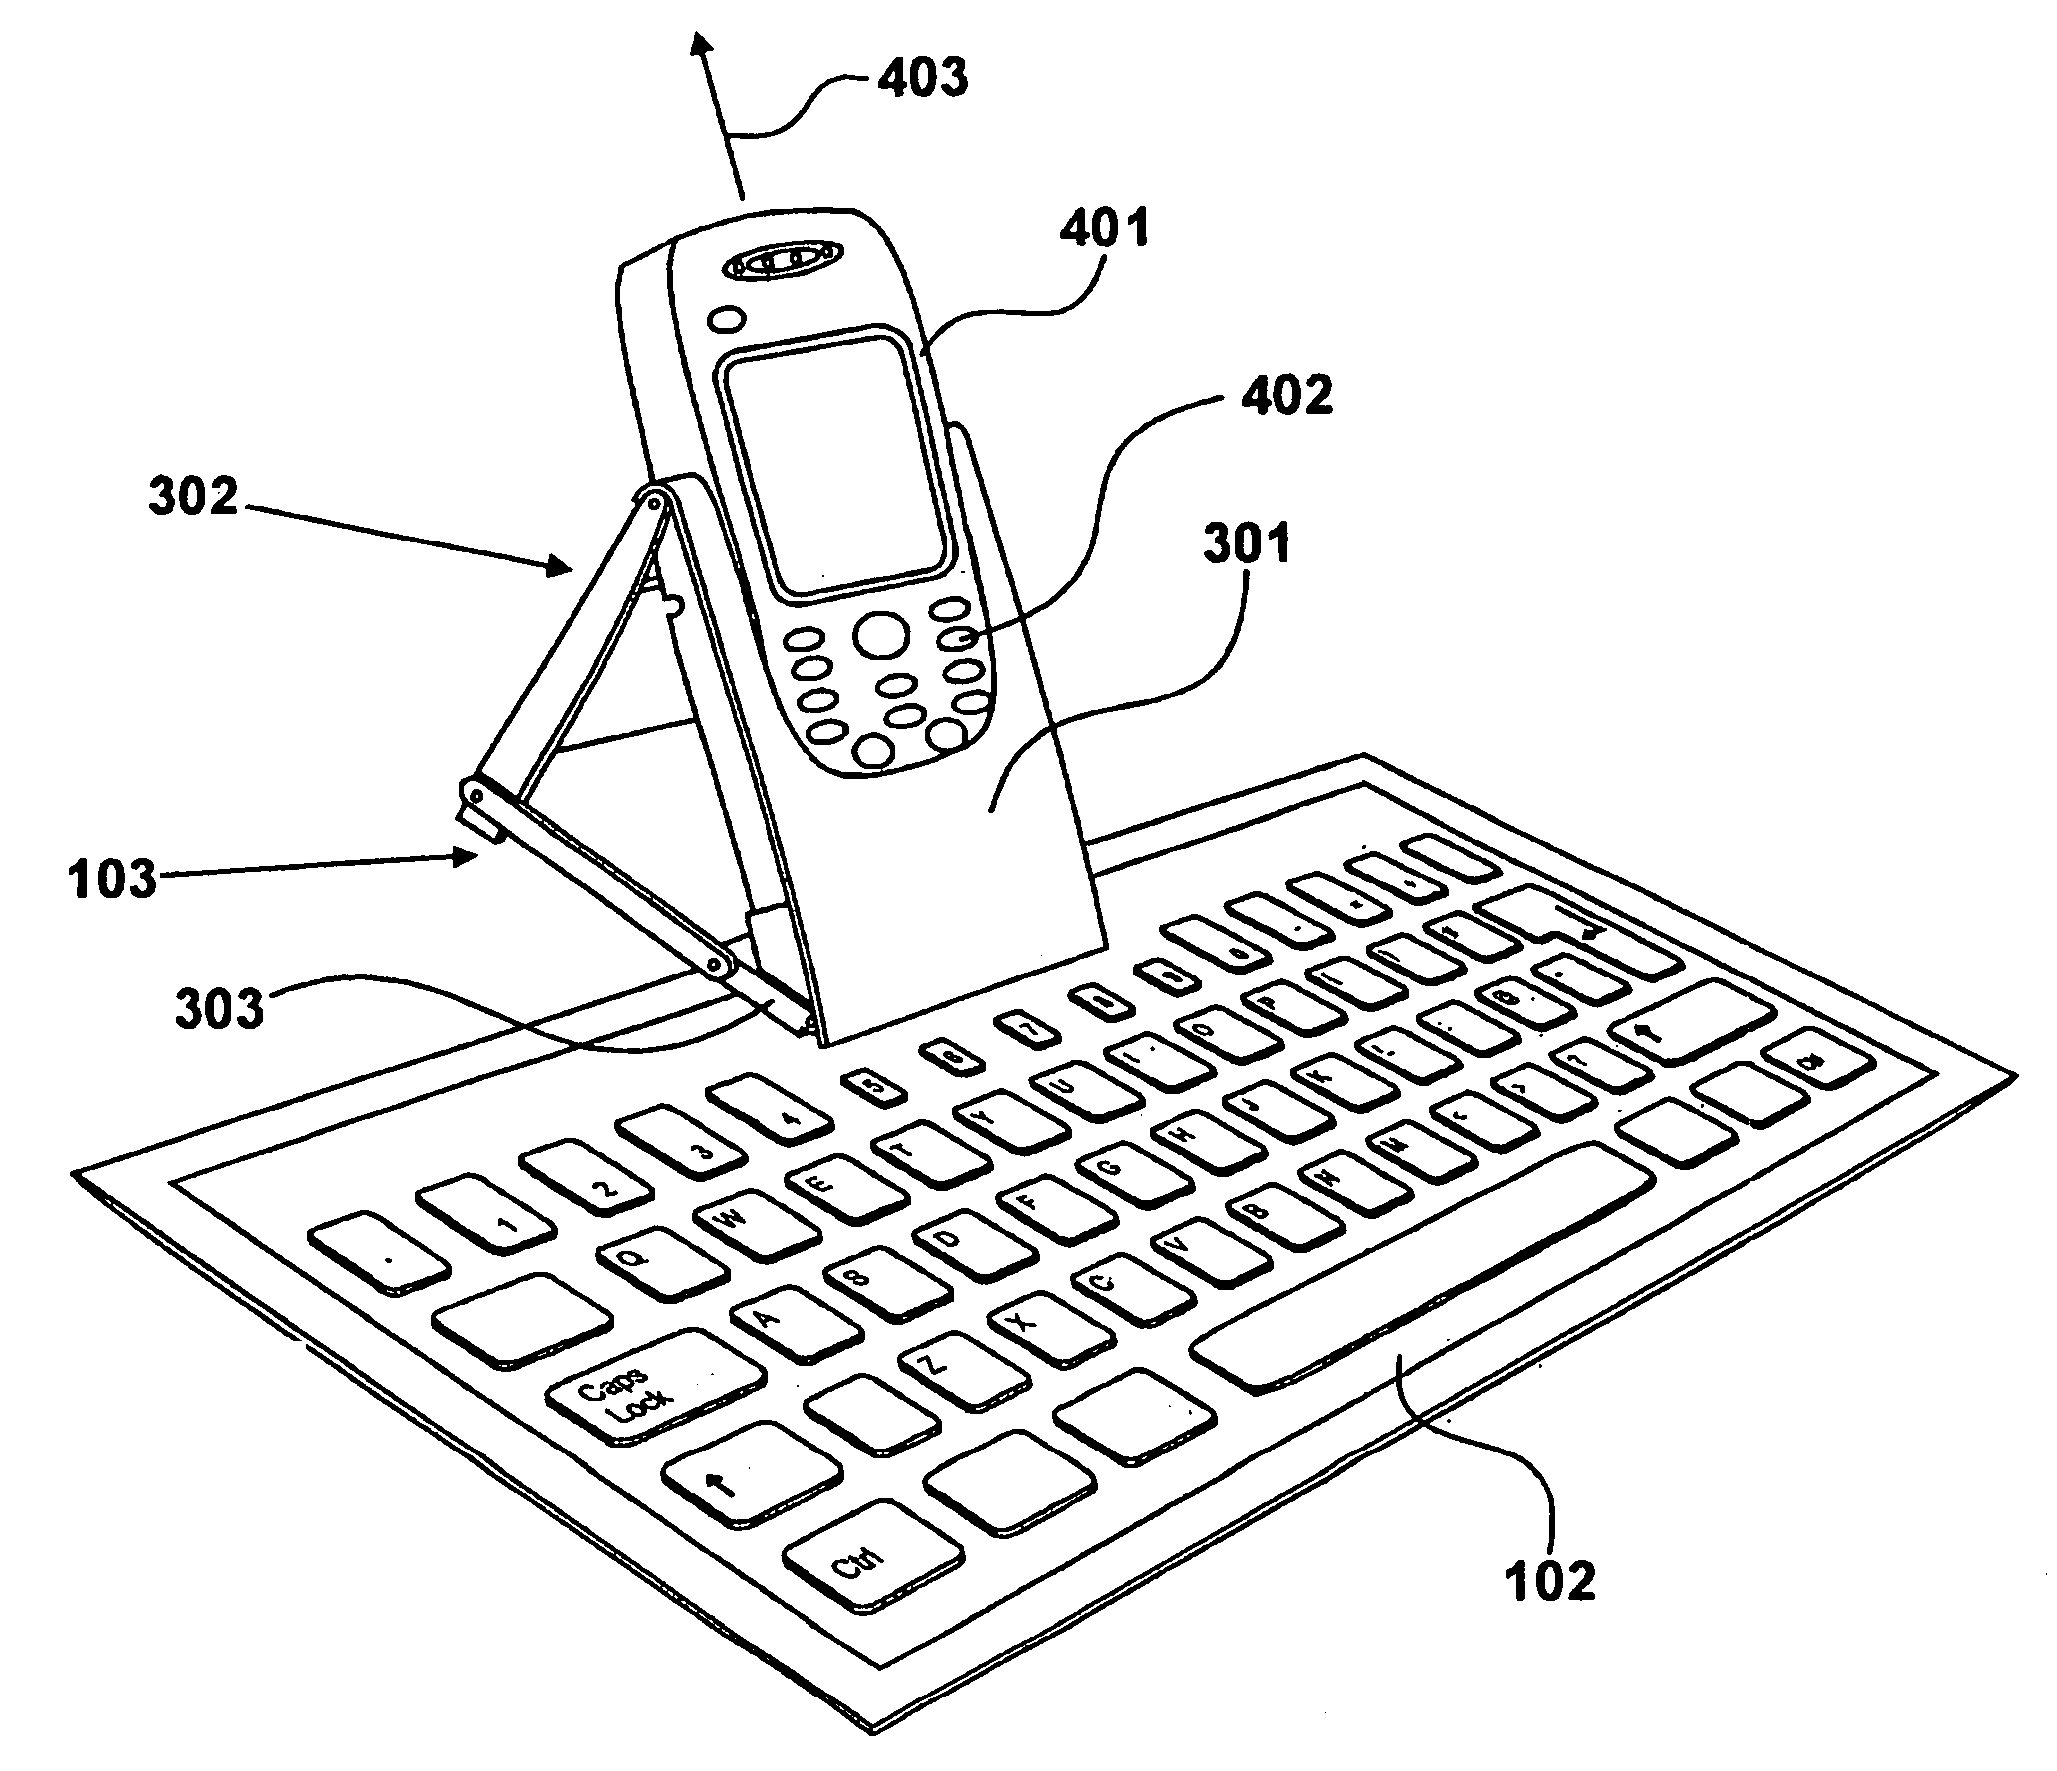 Flexible foldable keyboard